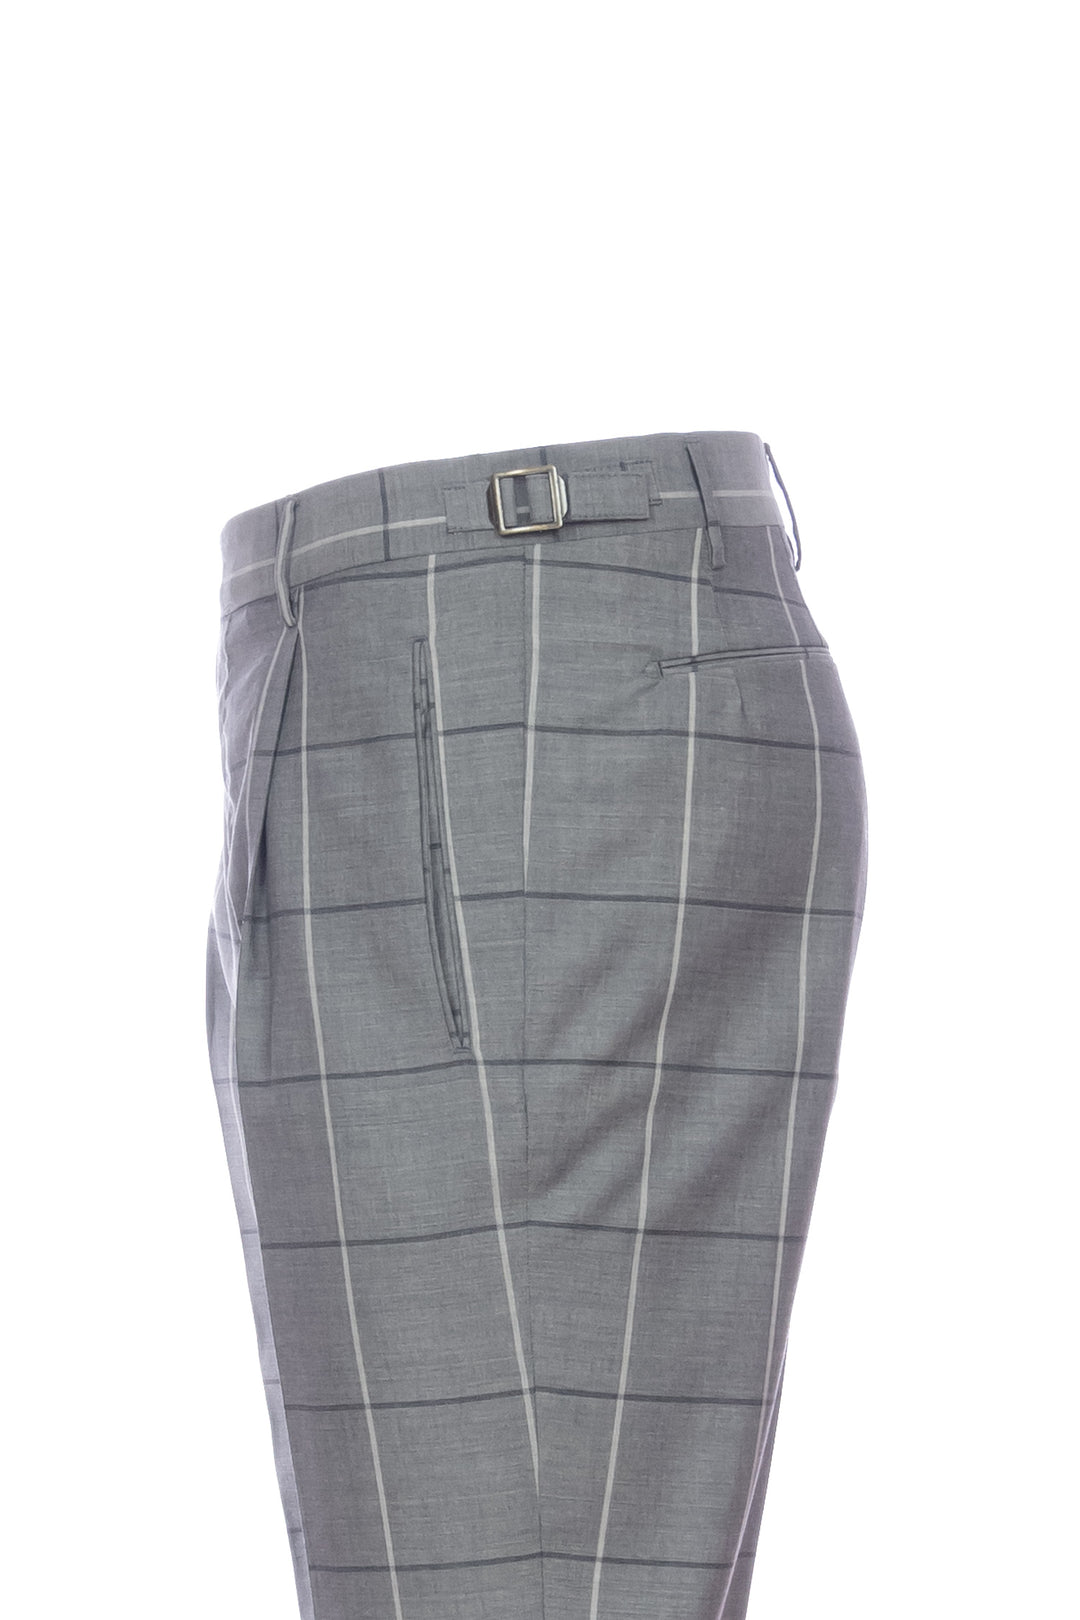 BERWICH Pantalone “RETRO” grigio check in lana vergine elasticizzata con una pince - Mancinelli 1954